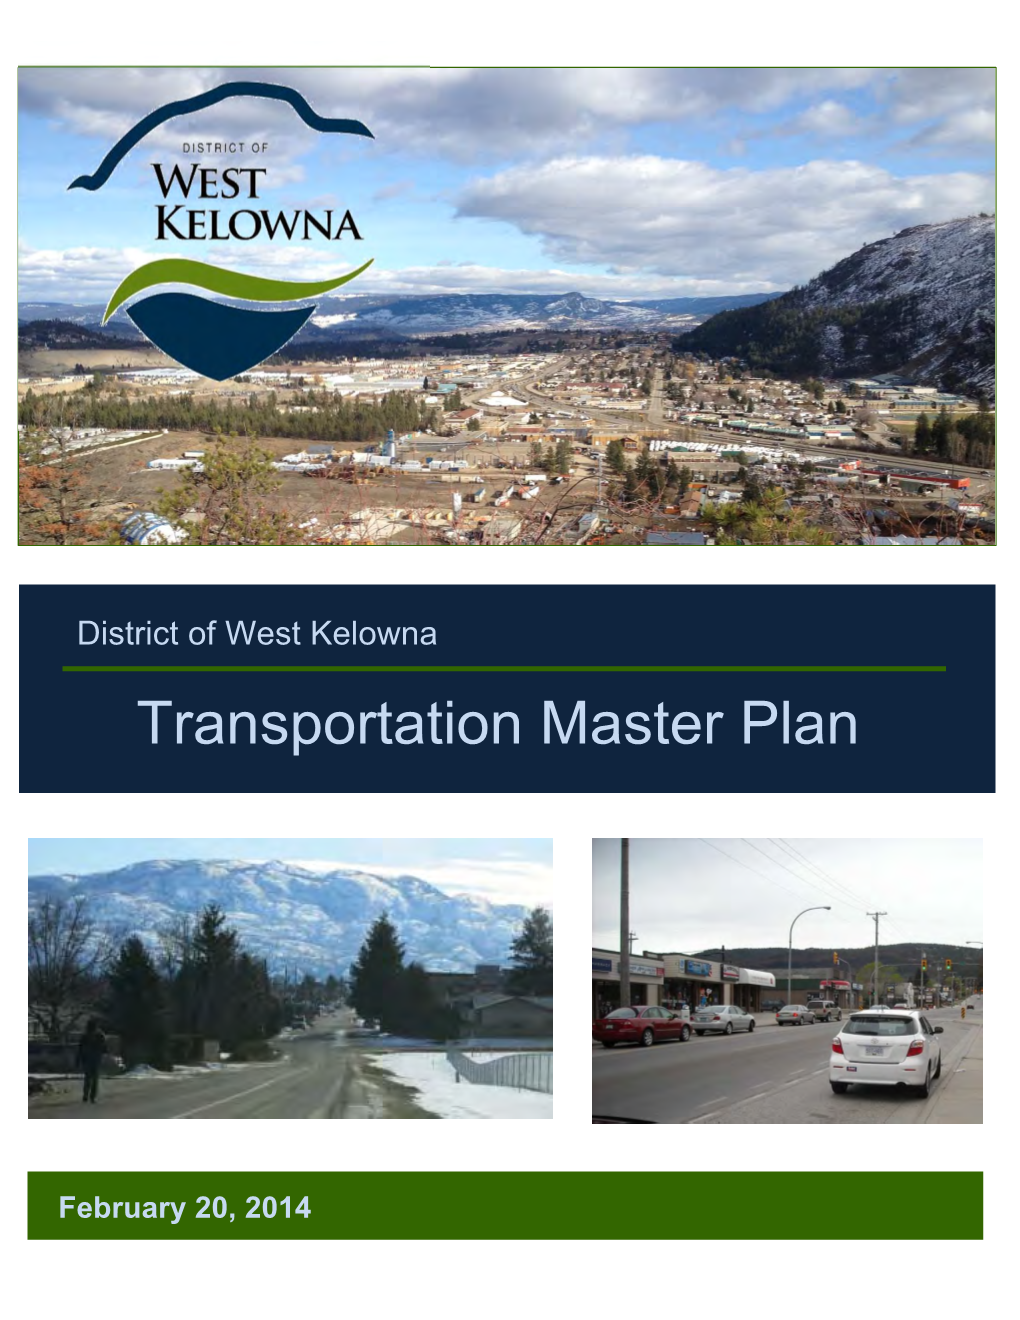 Transportation Master Plan